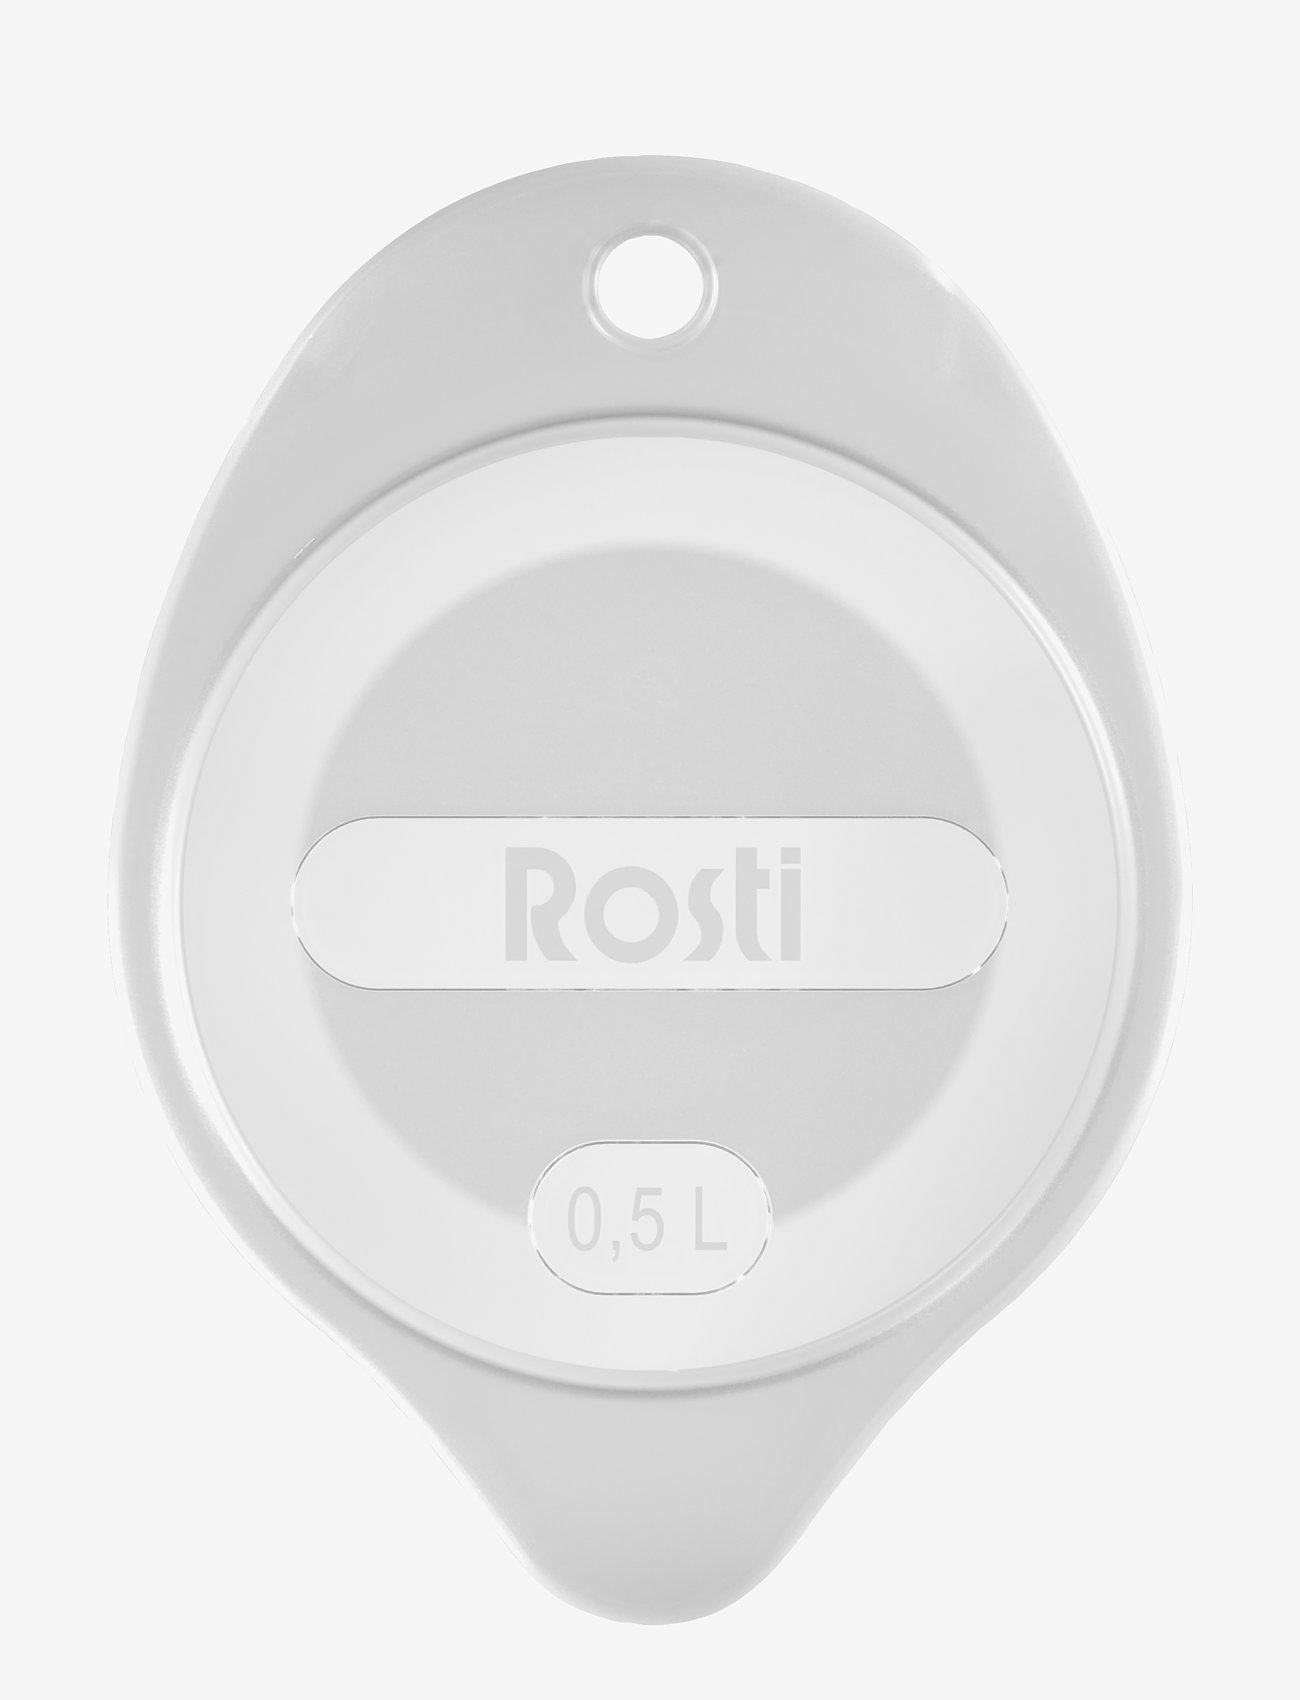 Rosti - Lid for Mixing jug - madalaimad hinnad - transparent - 0